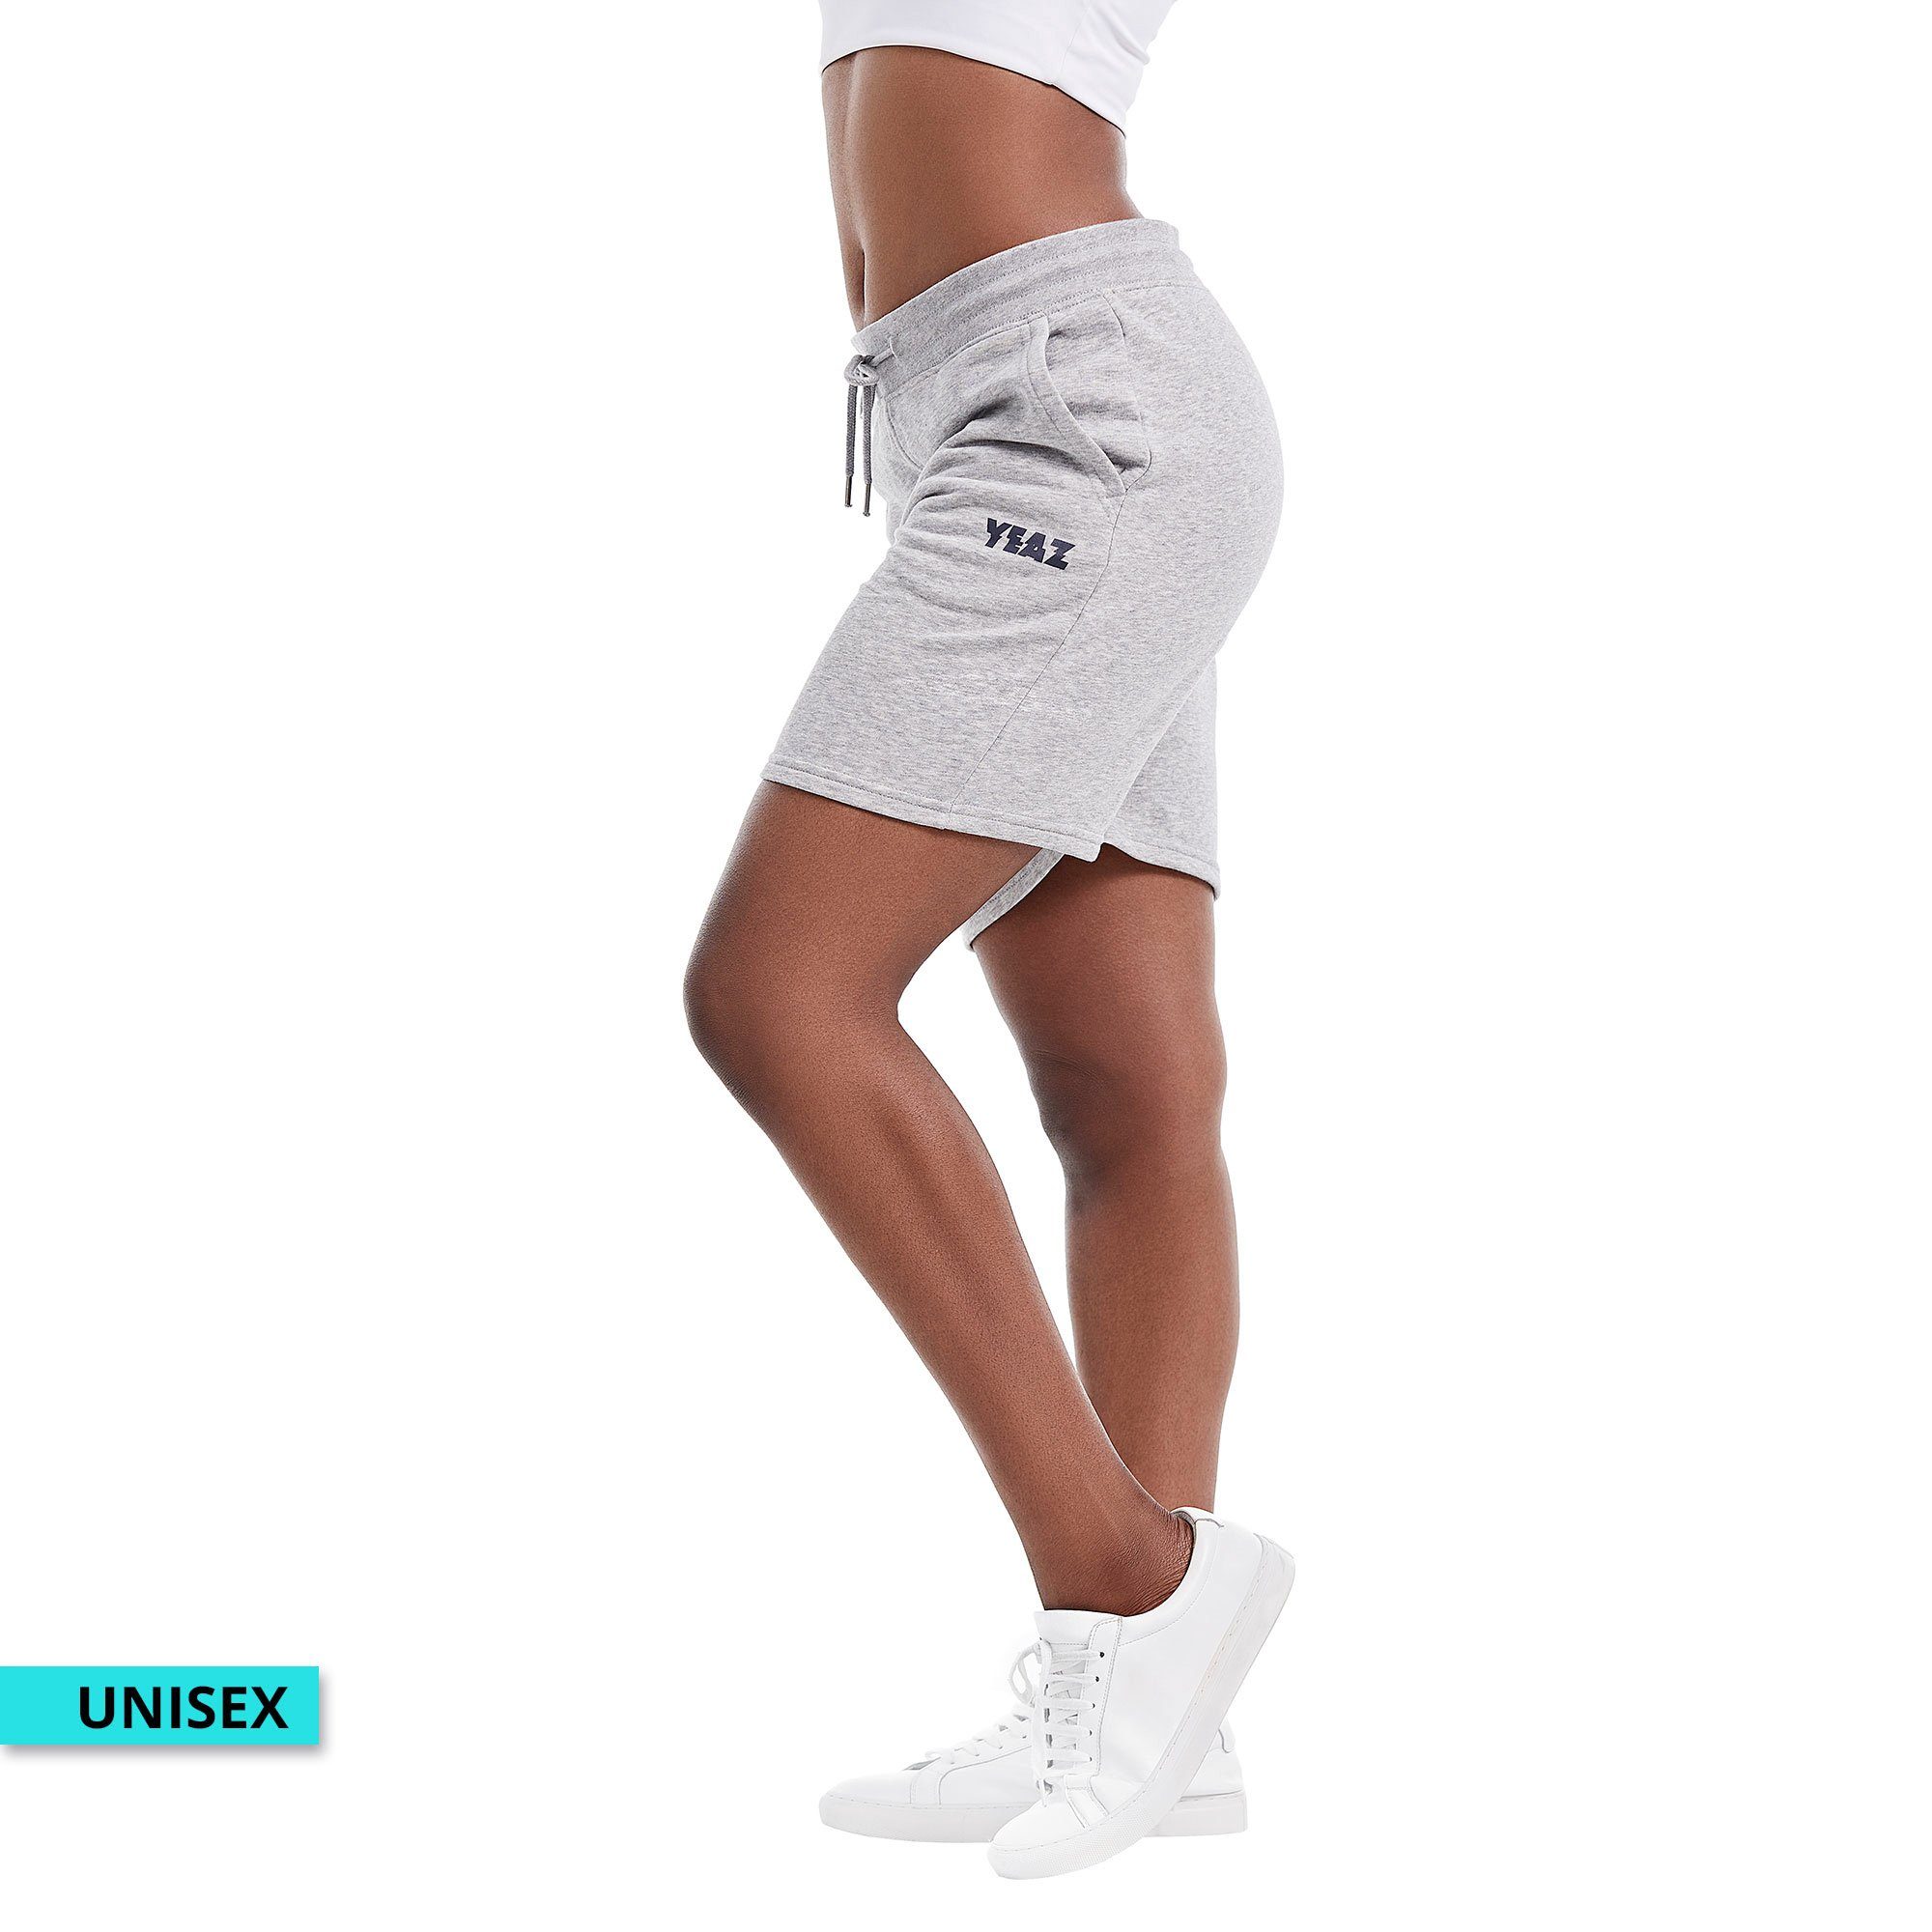 YEAZ grau CHAX Yogashorts shorts (2-tlg)